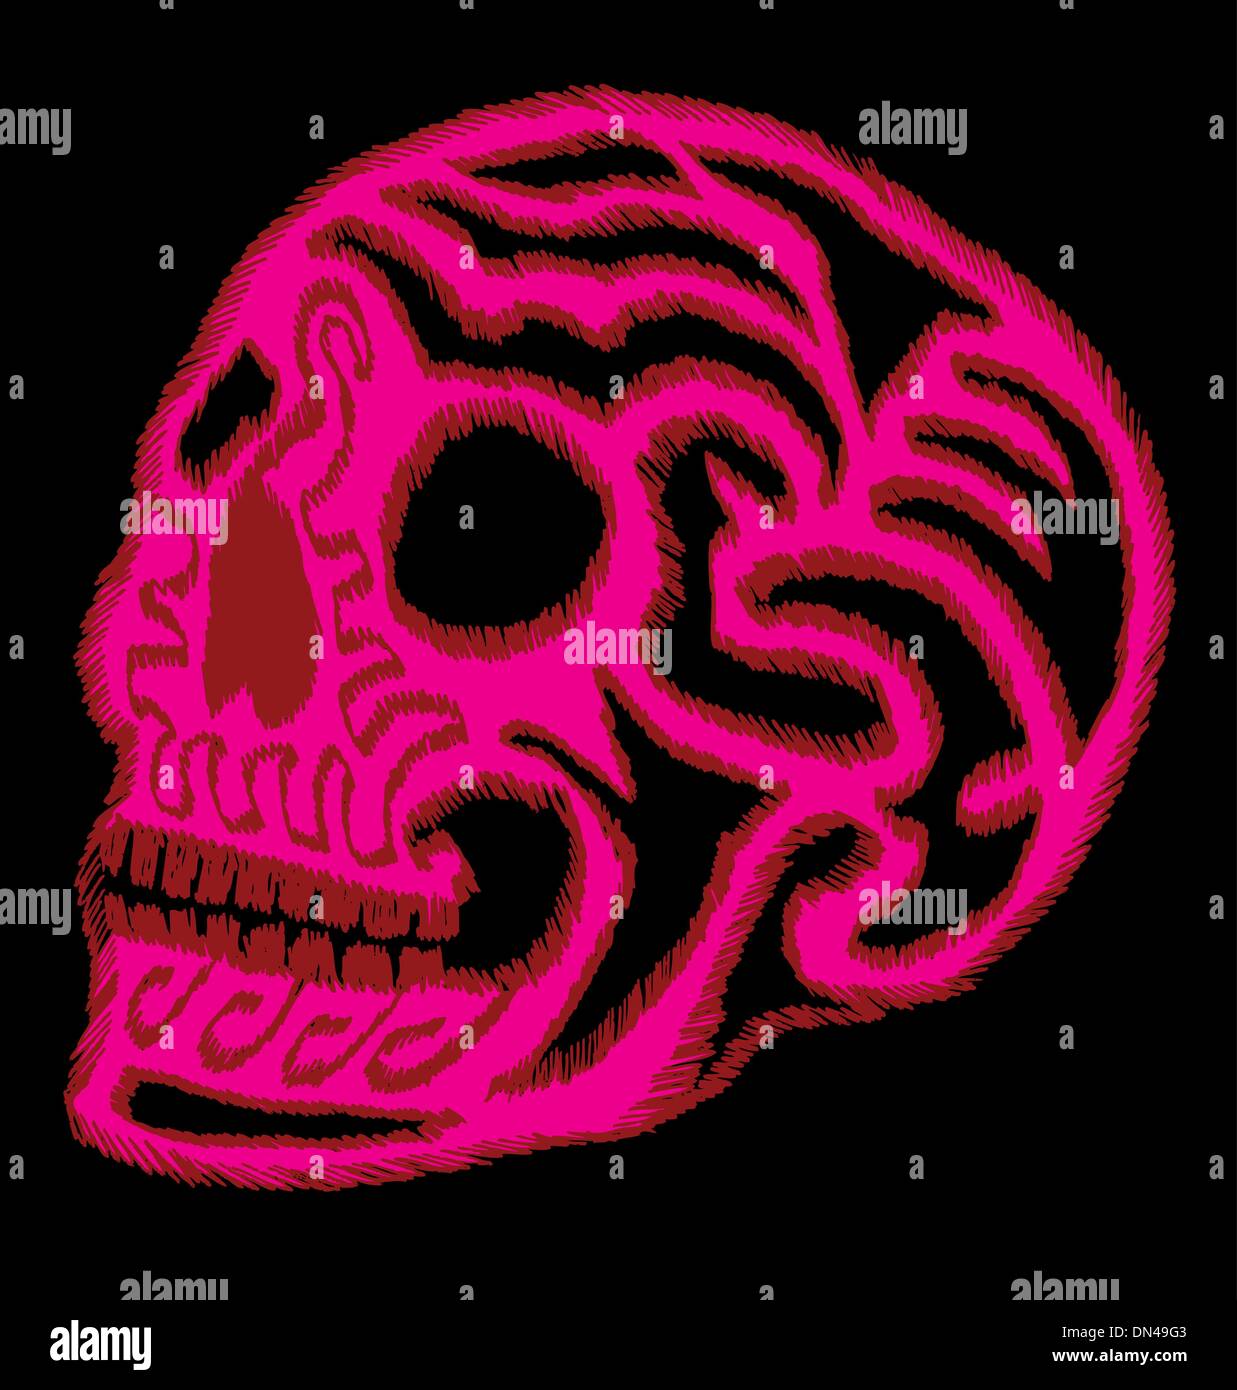 Tribal tatouage crâne mexicain vector art Illustration de Vecteur